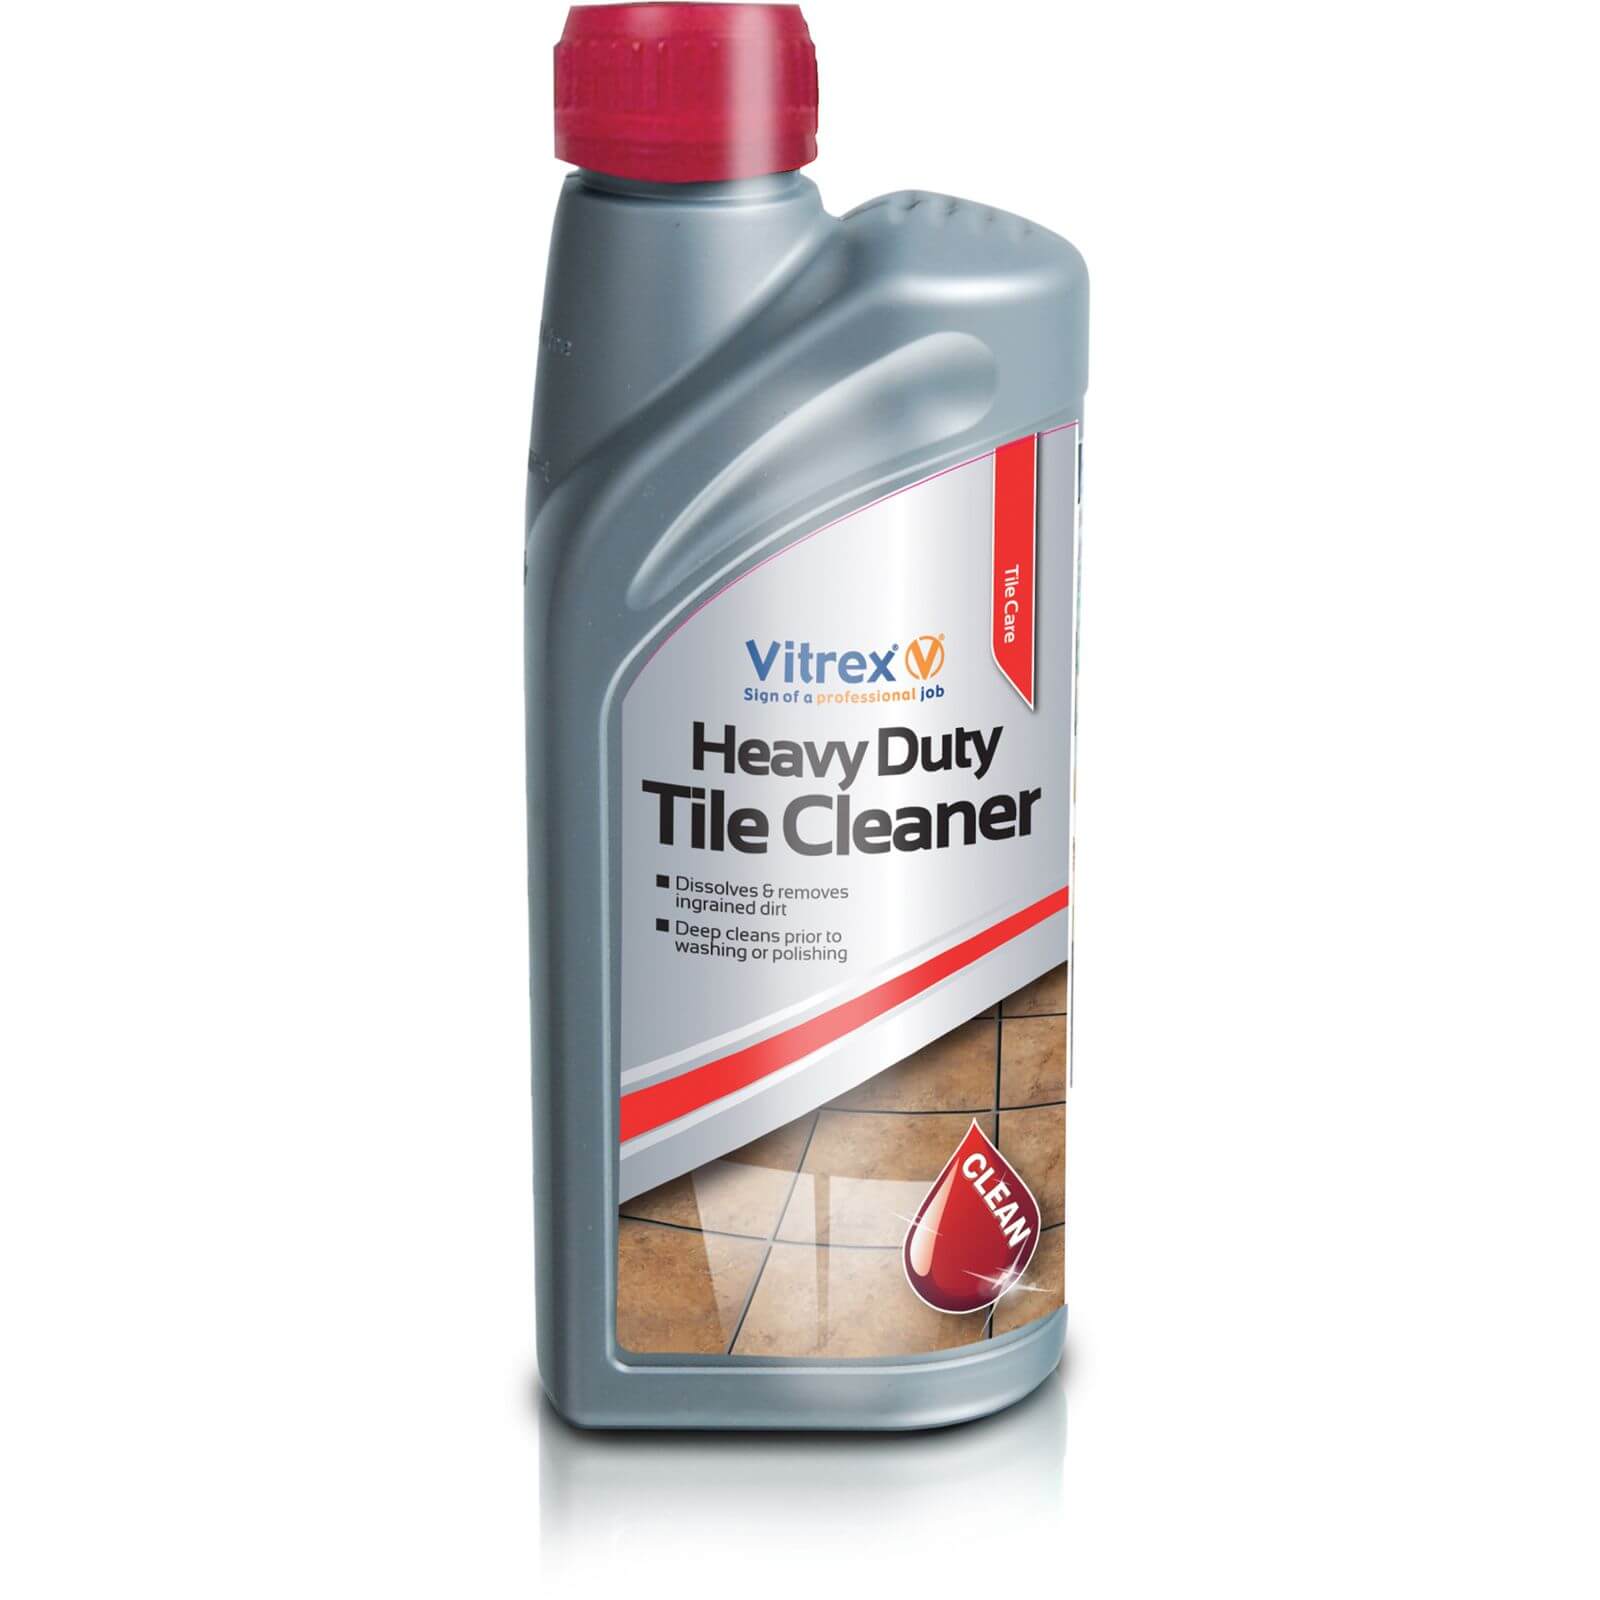 Vitrex Heavy Duty Tile Cleaner - 1L